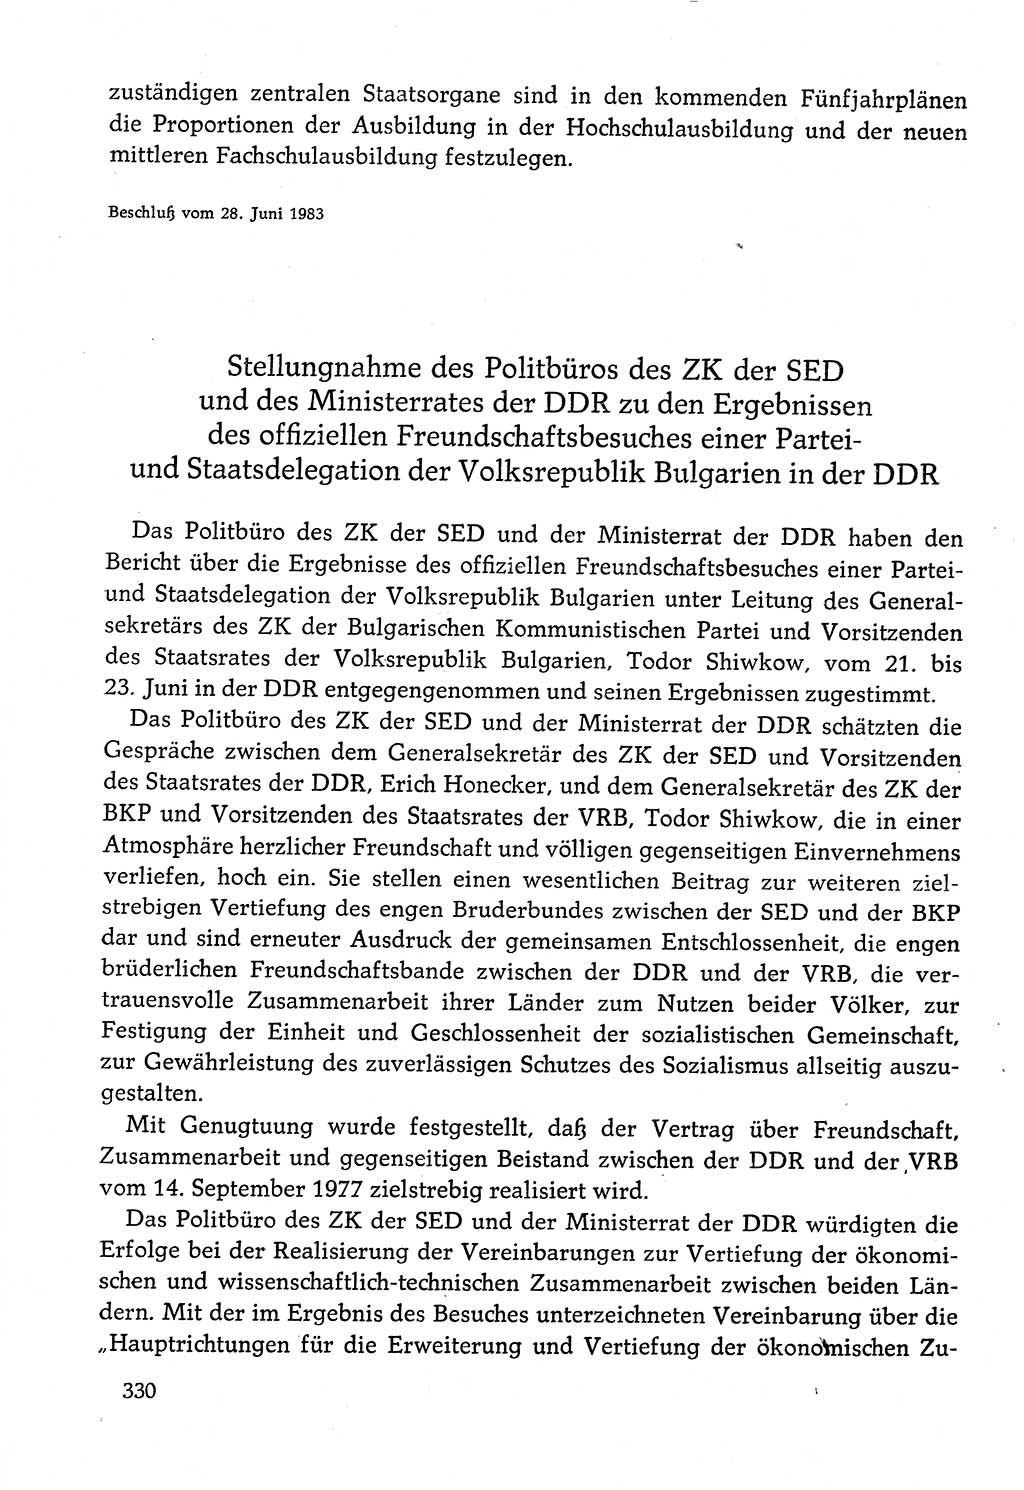 Dokumente der Sozialistischen Einheitspartei Deutschlands (SED) [Deutsche Demokratische Republik (DDR)] 1982-1983, Seite 330 (Dok. SED DDR 1982-1983, S. 330)